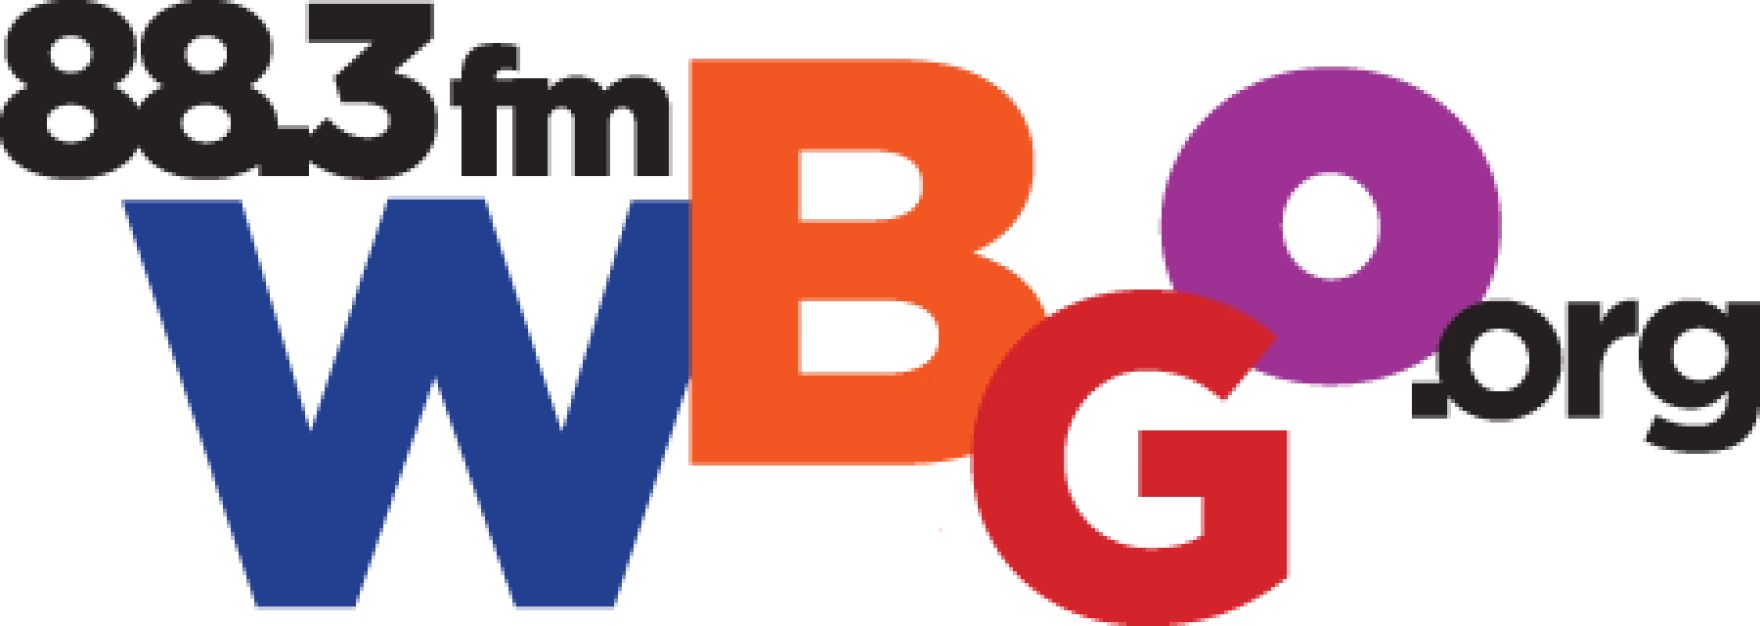 Wbgo Logo